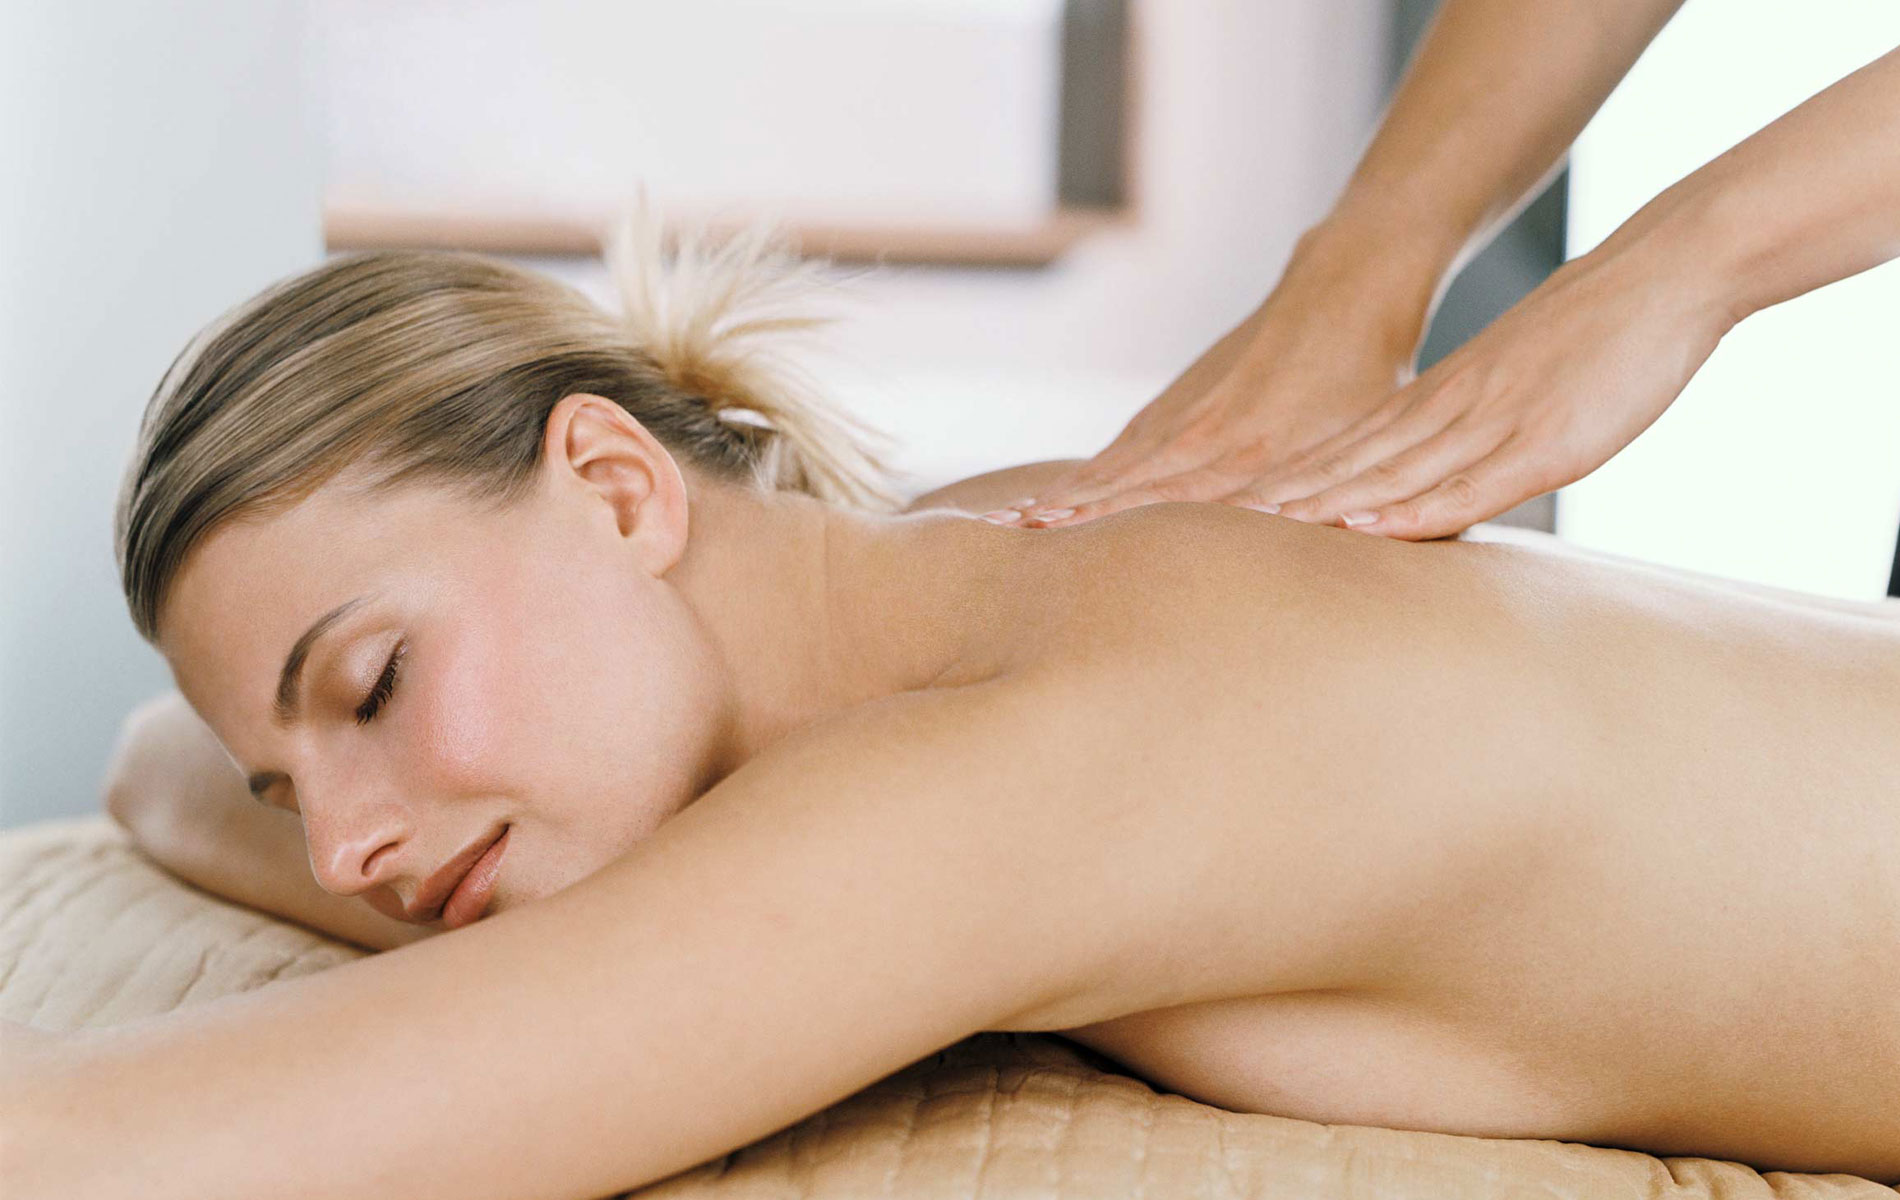 Intimate massage. Классический массаж. Классический массаж спины. Массаж картинки. Общий массаж спины.